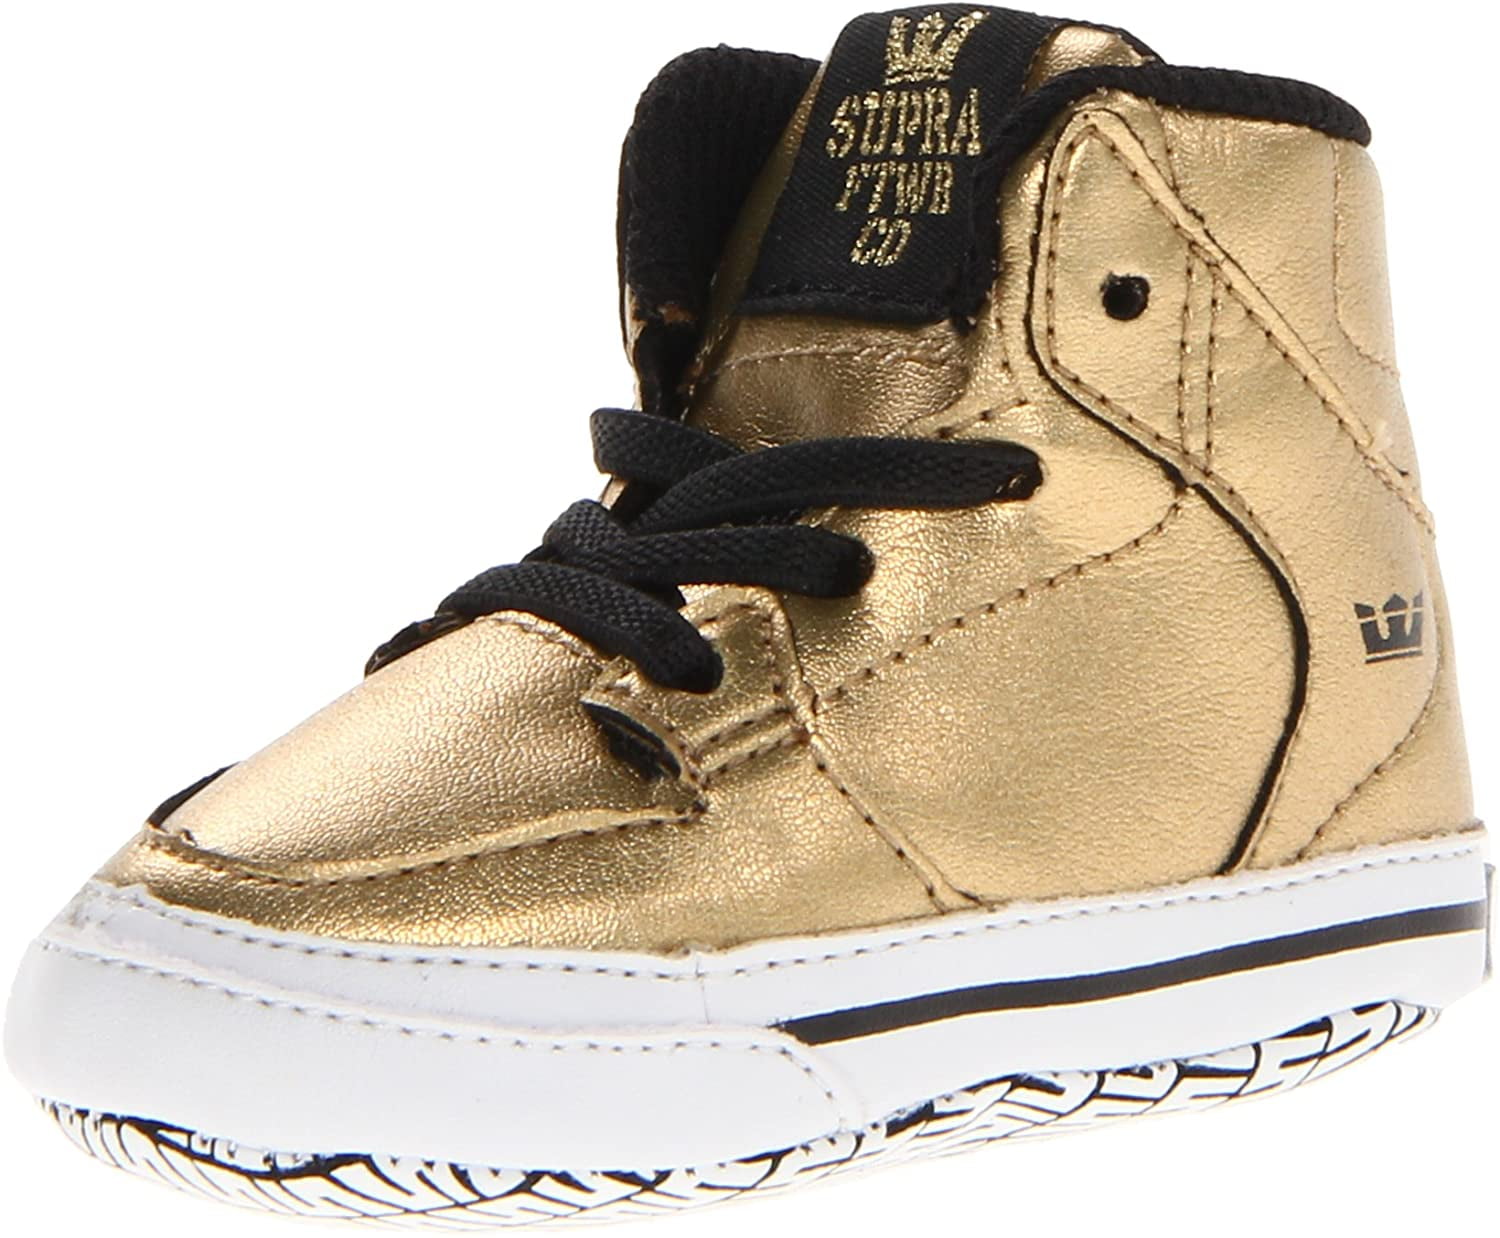 moreel Roux een vuurtje stoken Supra Baby Crib Vaider Gold Shoes - Walmart.com